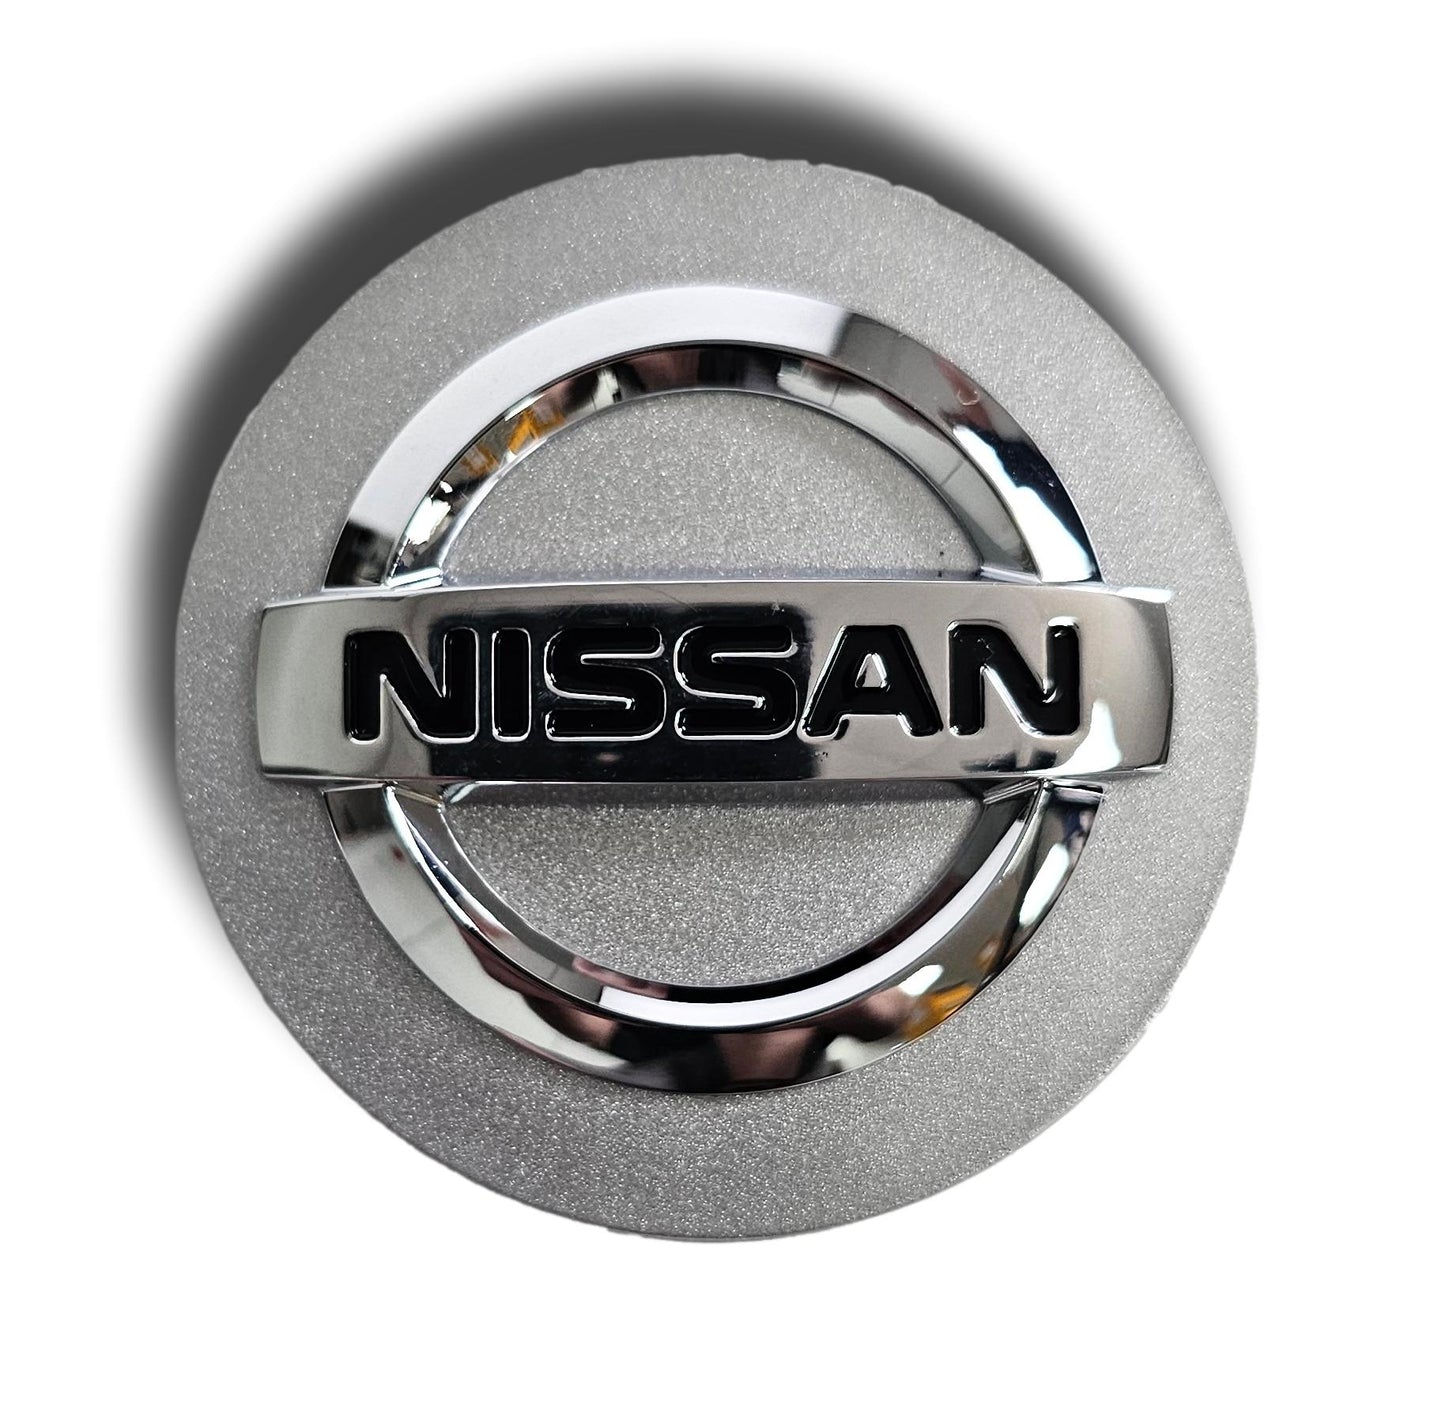 Juego de 4 tapas centrales para ruedas Nissan Juke, originales, nuevas 40342BR01A